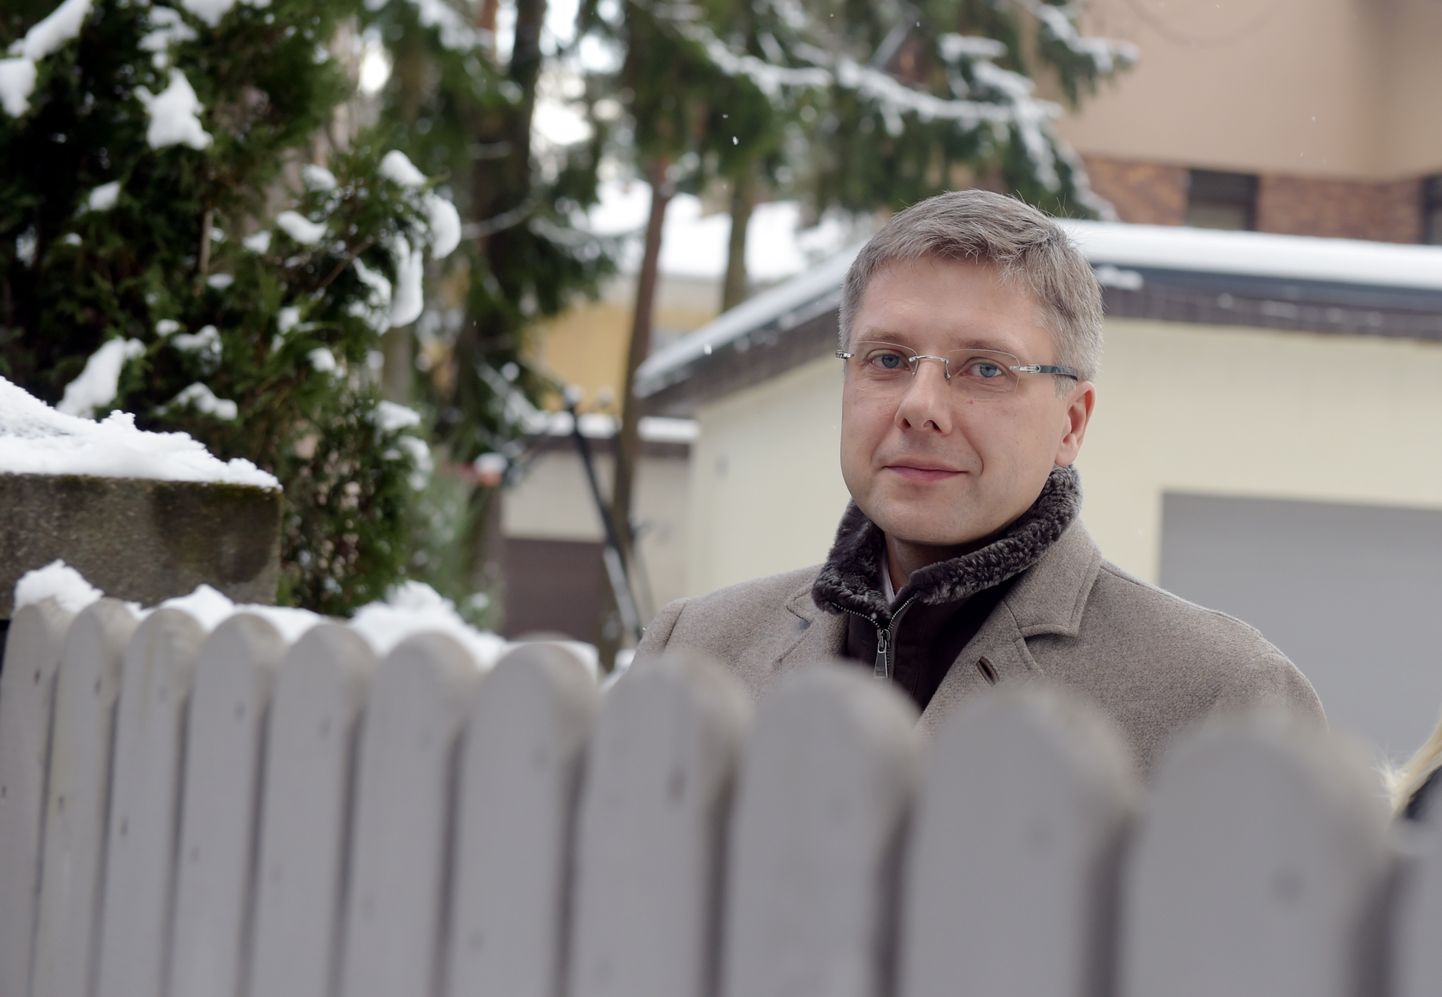 Rīgas domes priekšsēdētājs Nils Ušakovs pie savas mājas Mežaparkā.